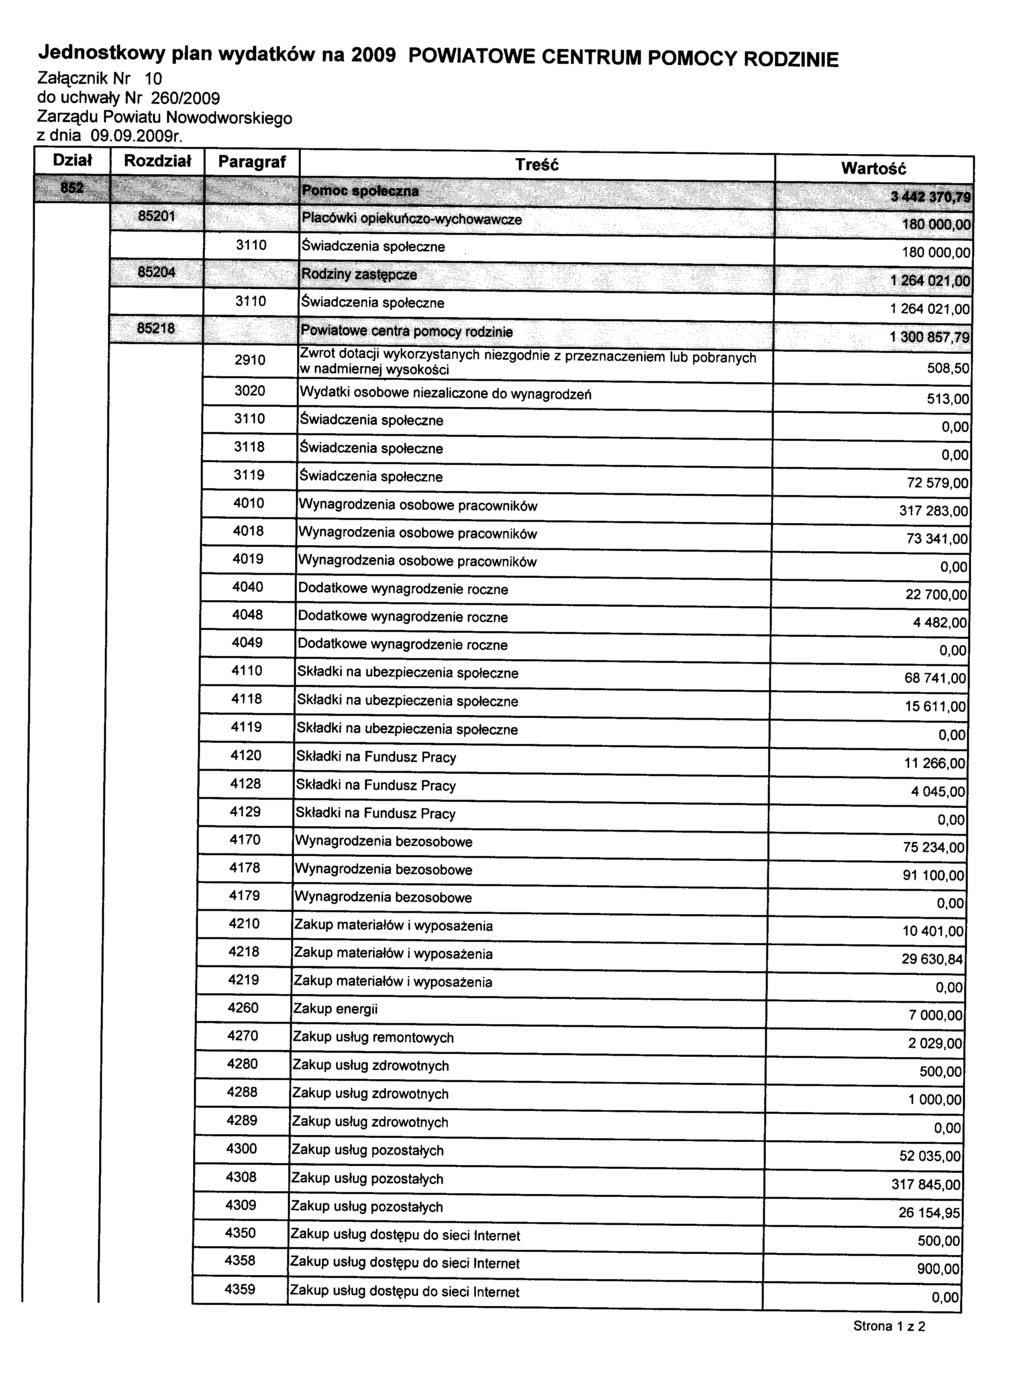 Jednostkowy plan wydatków na 2009 POWIATOWE CENTRUM POMOCY RODZINIE Załącznik Nr 10 do uchwały Nr 260/2009 Zarządu Powiatu Nowodworskiego z dnia 09.09.2009r.